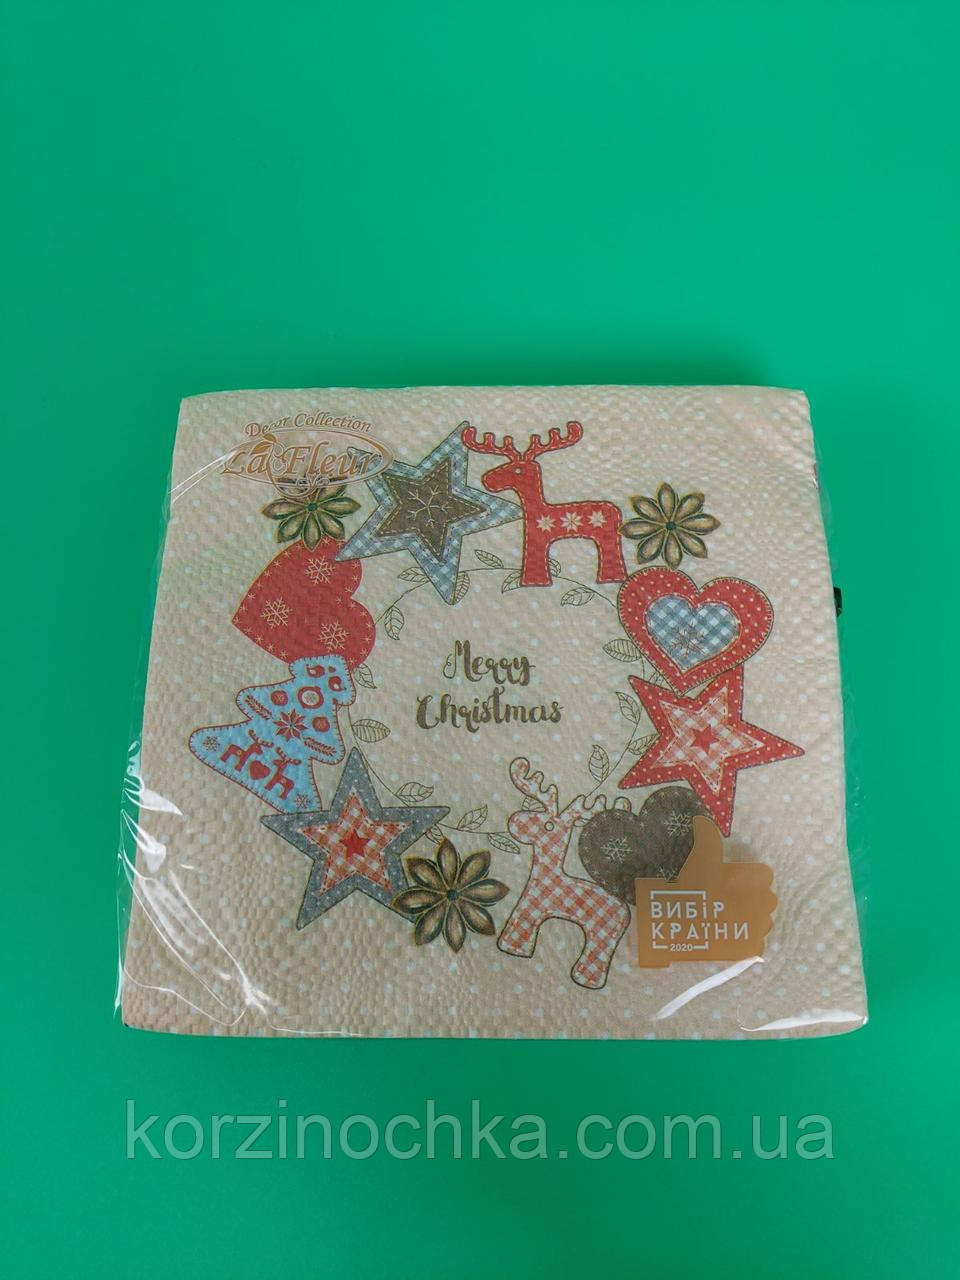 Святкова Новорічна серветка(ЗЗХЗЗ,16 шт)La Fleur"Фетровий декор"(1 пач)Новорічна серветка паперова